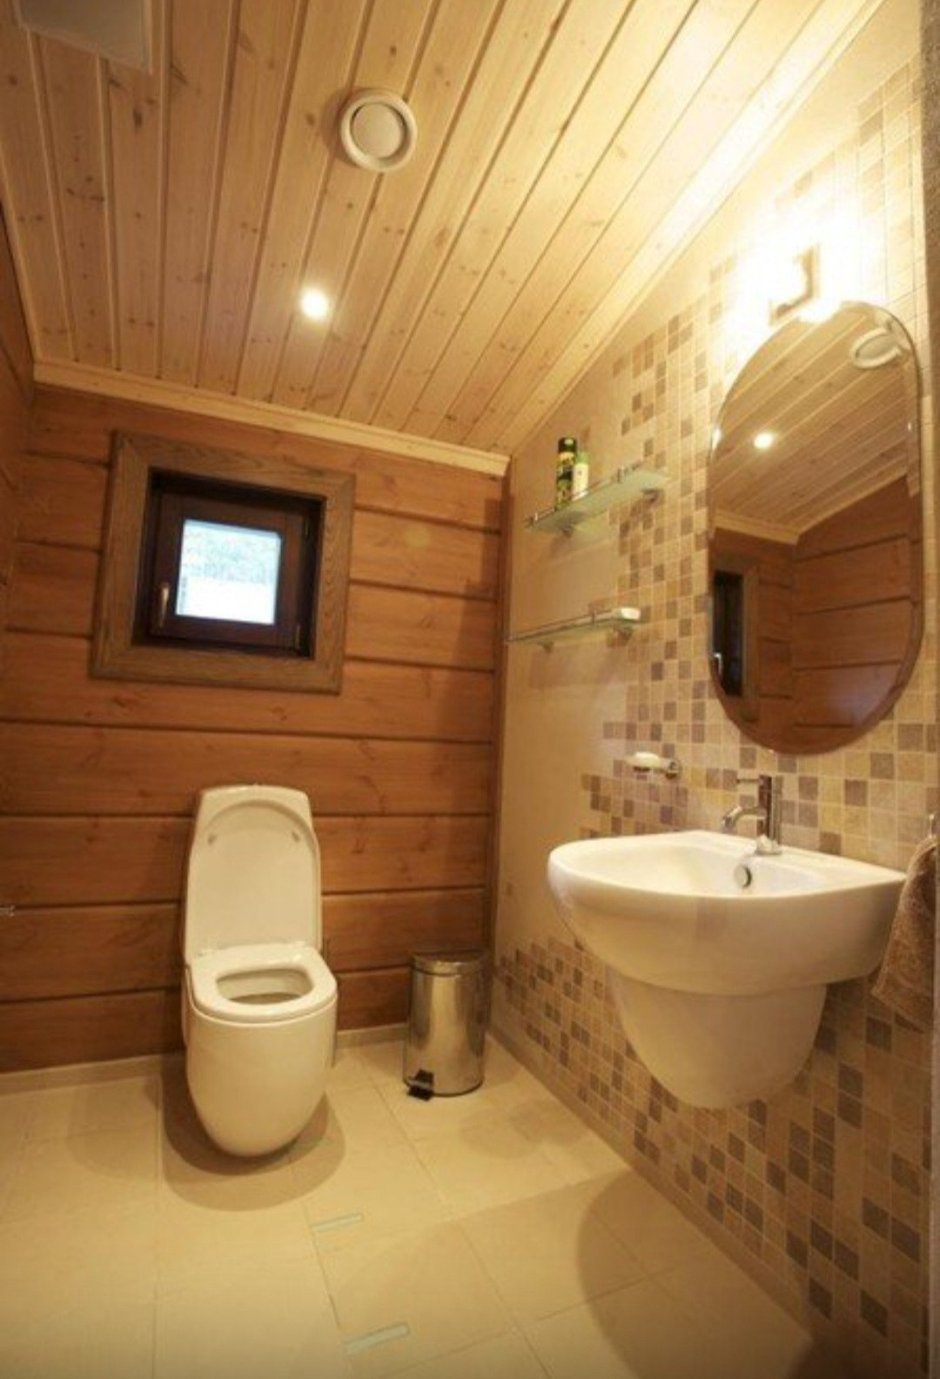 Ванная комната в деревянном доме